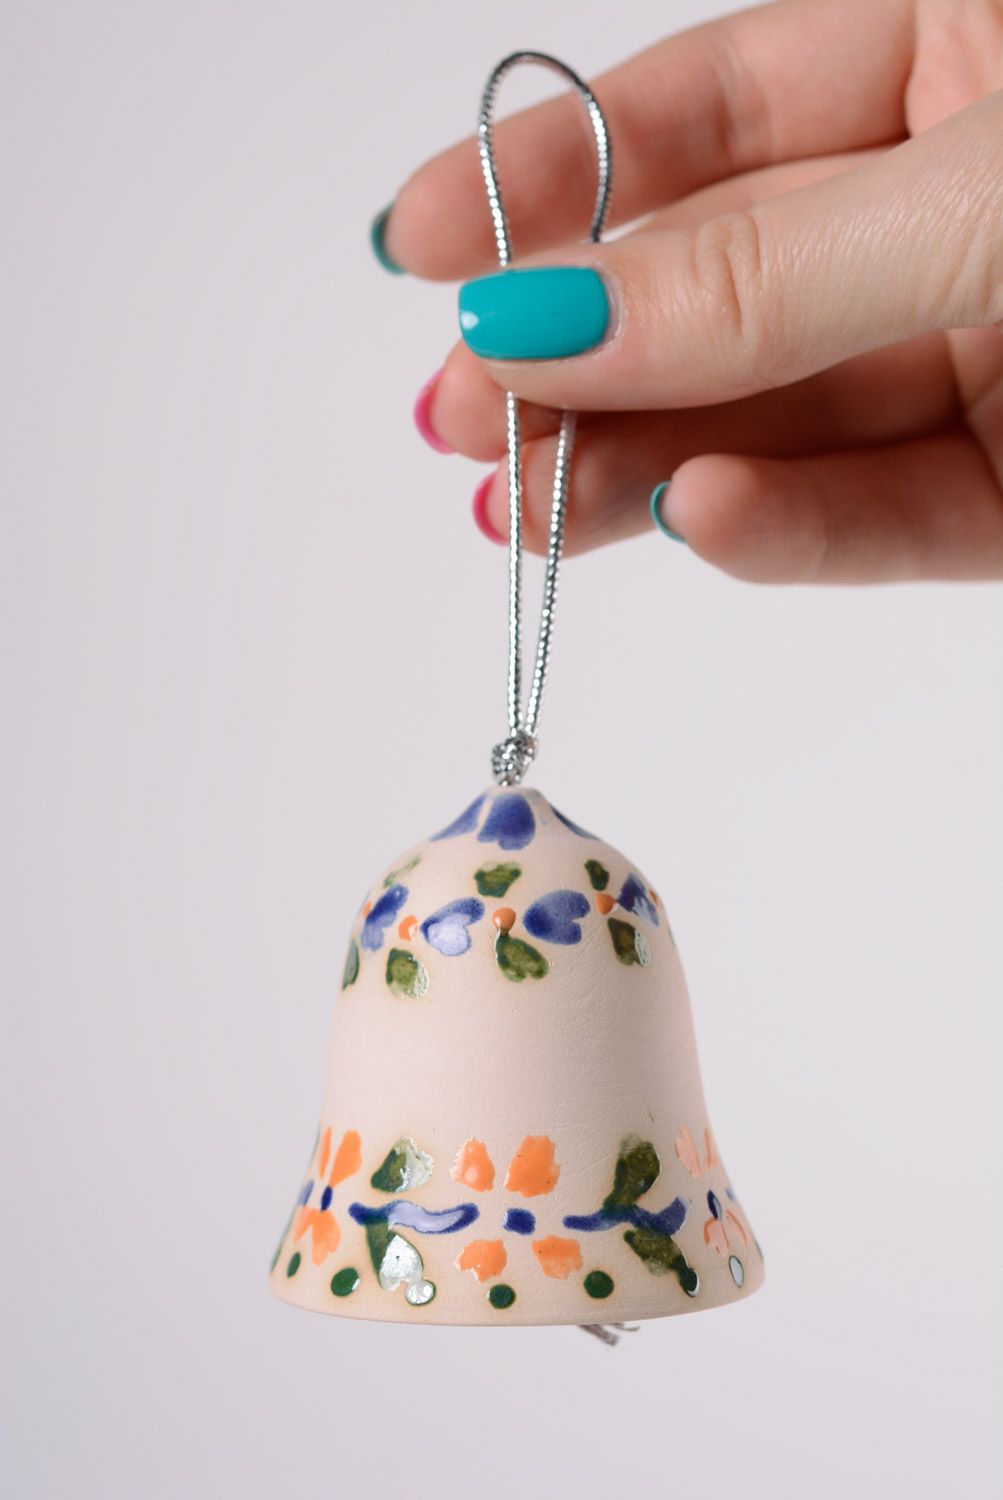 Handmade decorative light maiolica ceramic hanging bell ornamented with glaze photo 2